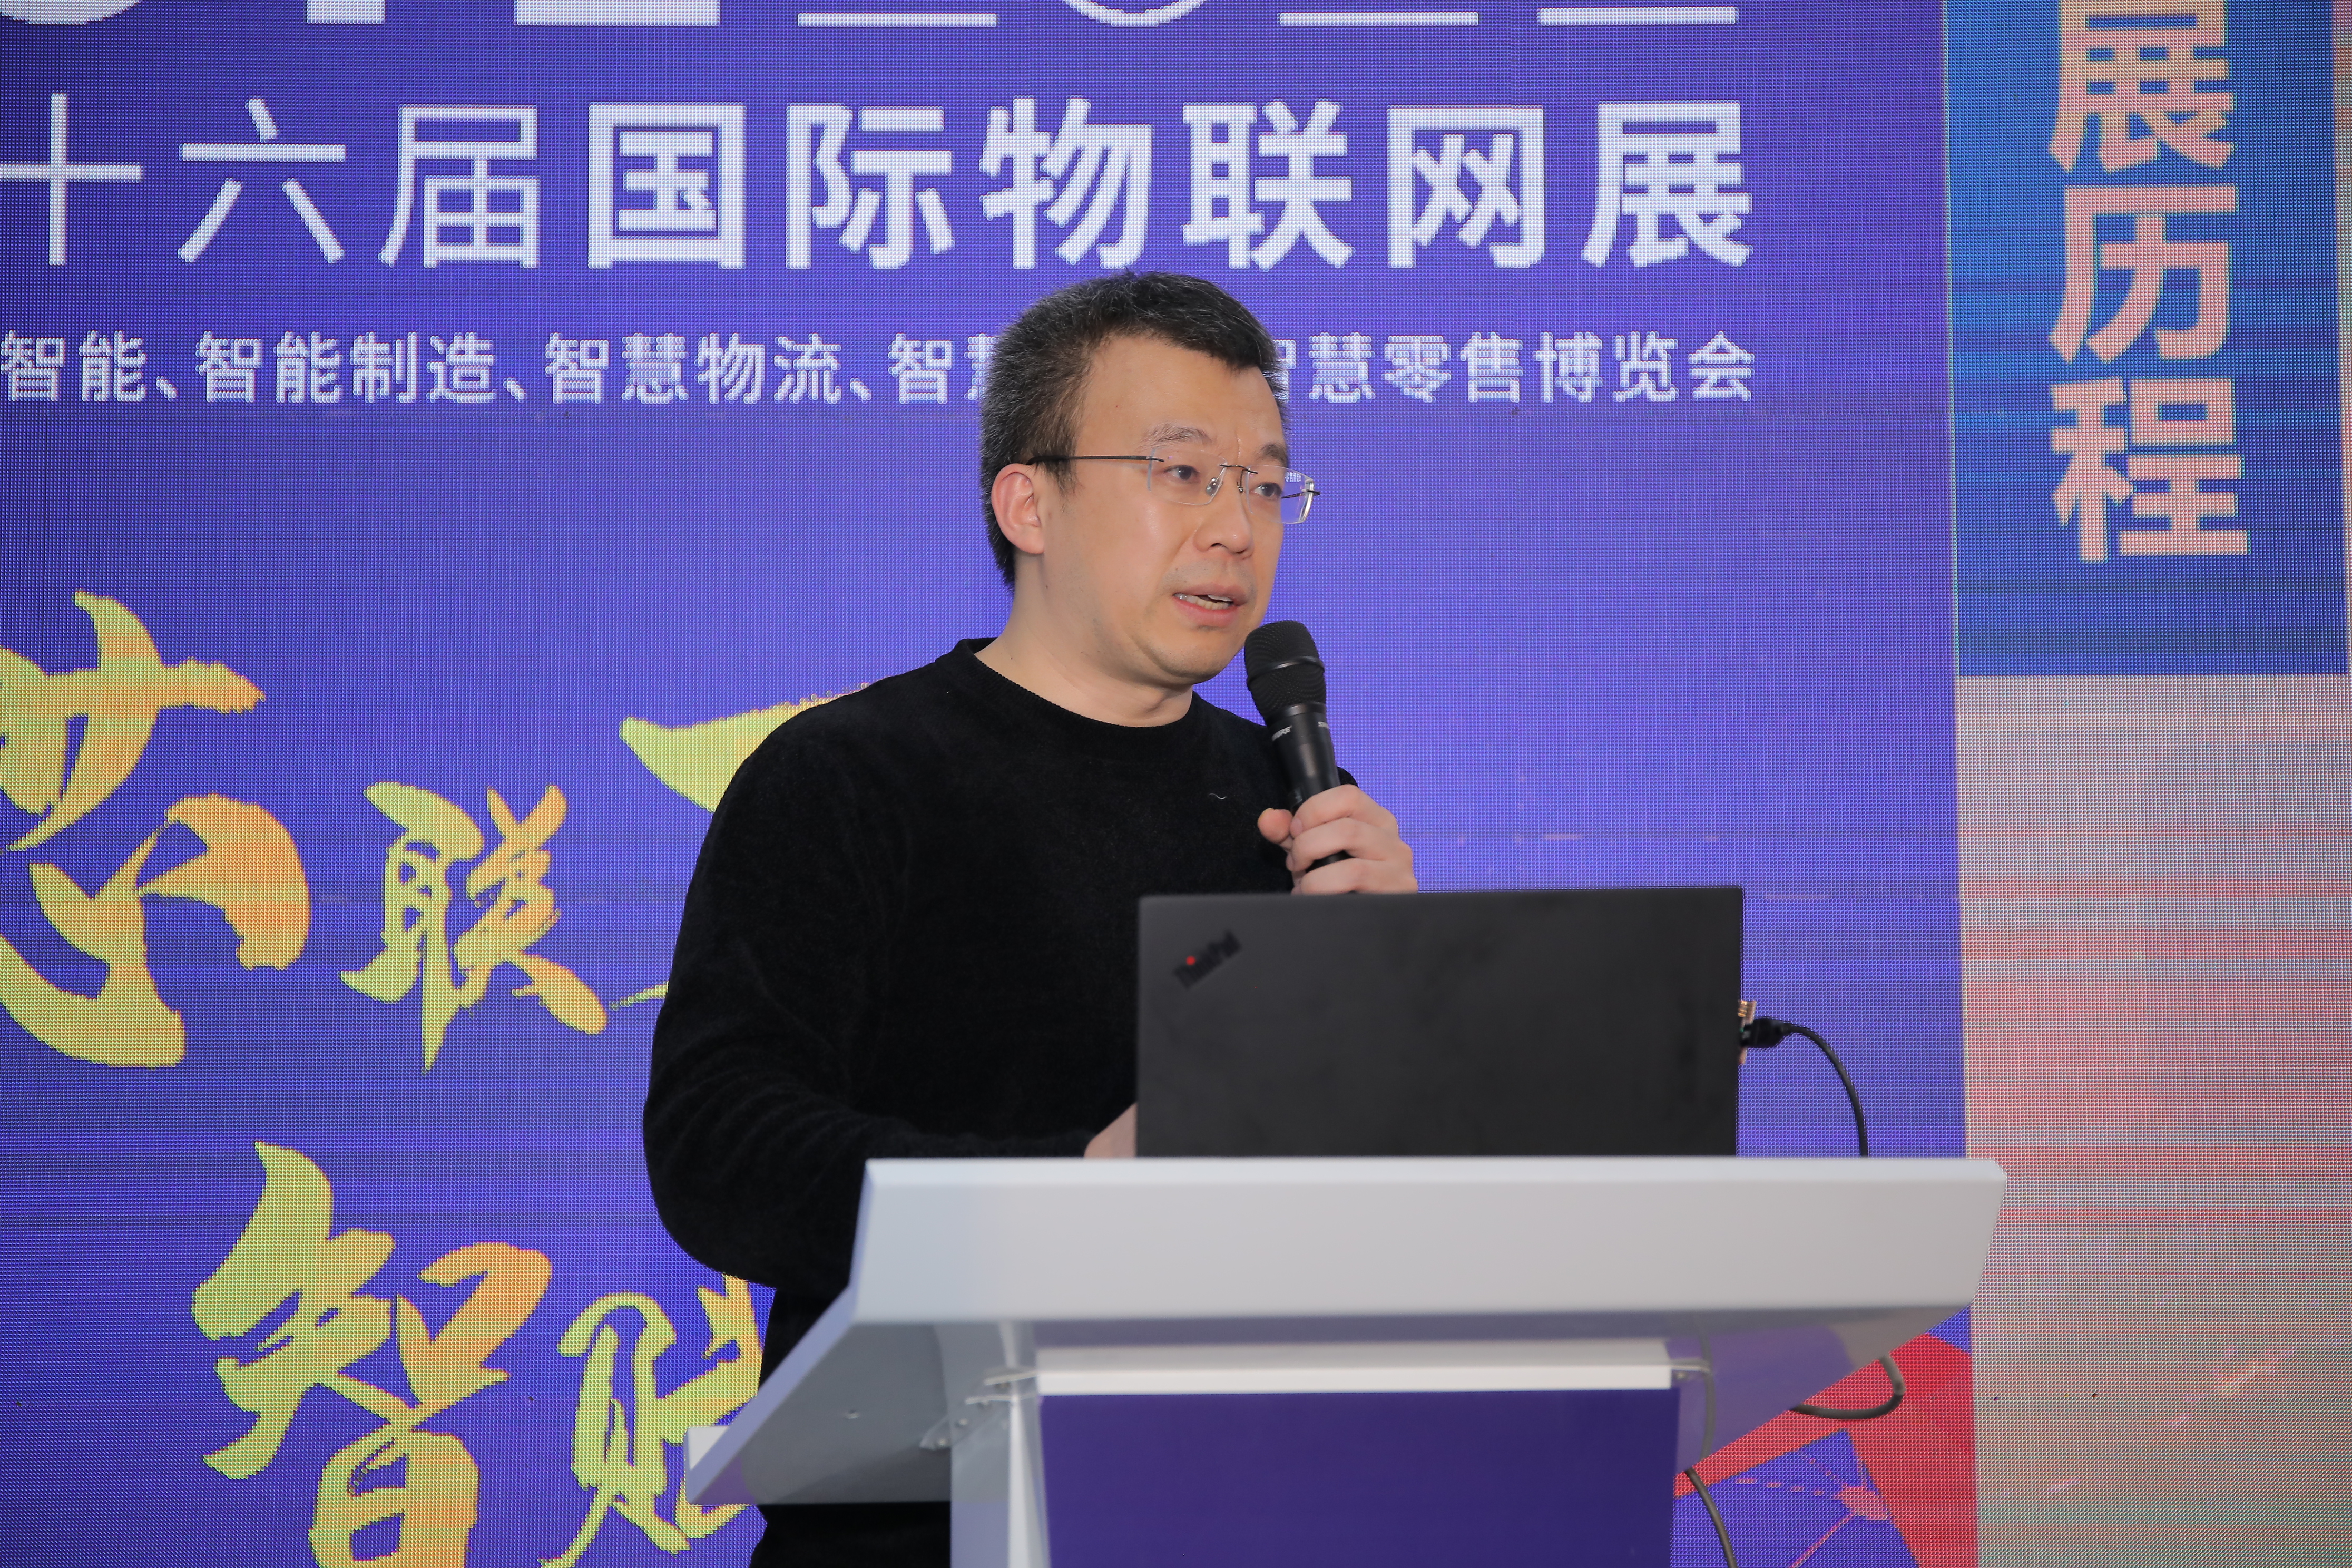 【论坛】IOTE 2021深圳国际物联网传感器高峰论坛 